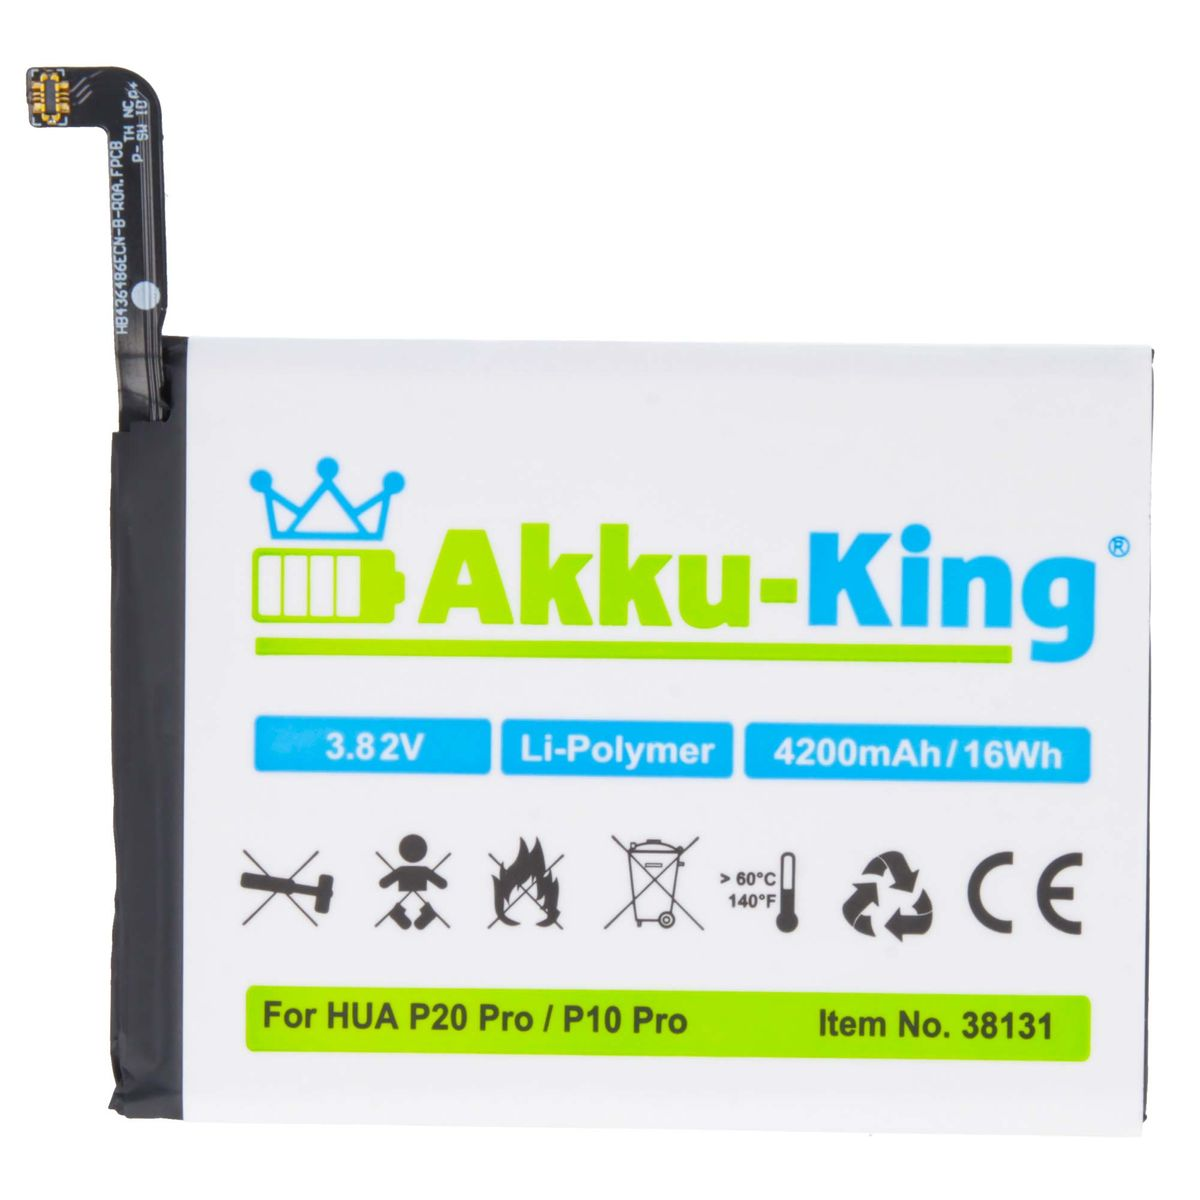 3.82 4200mAh kompatibel mit Volt, Li-Polymer Handy-Akku, AKKU-KING Akku Huawei HB436486ECW